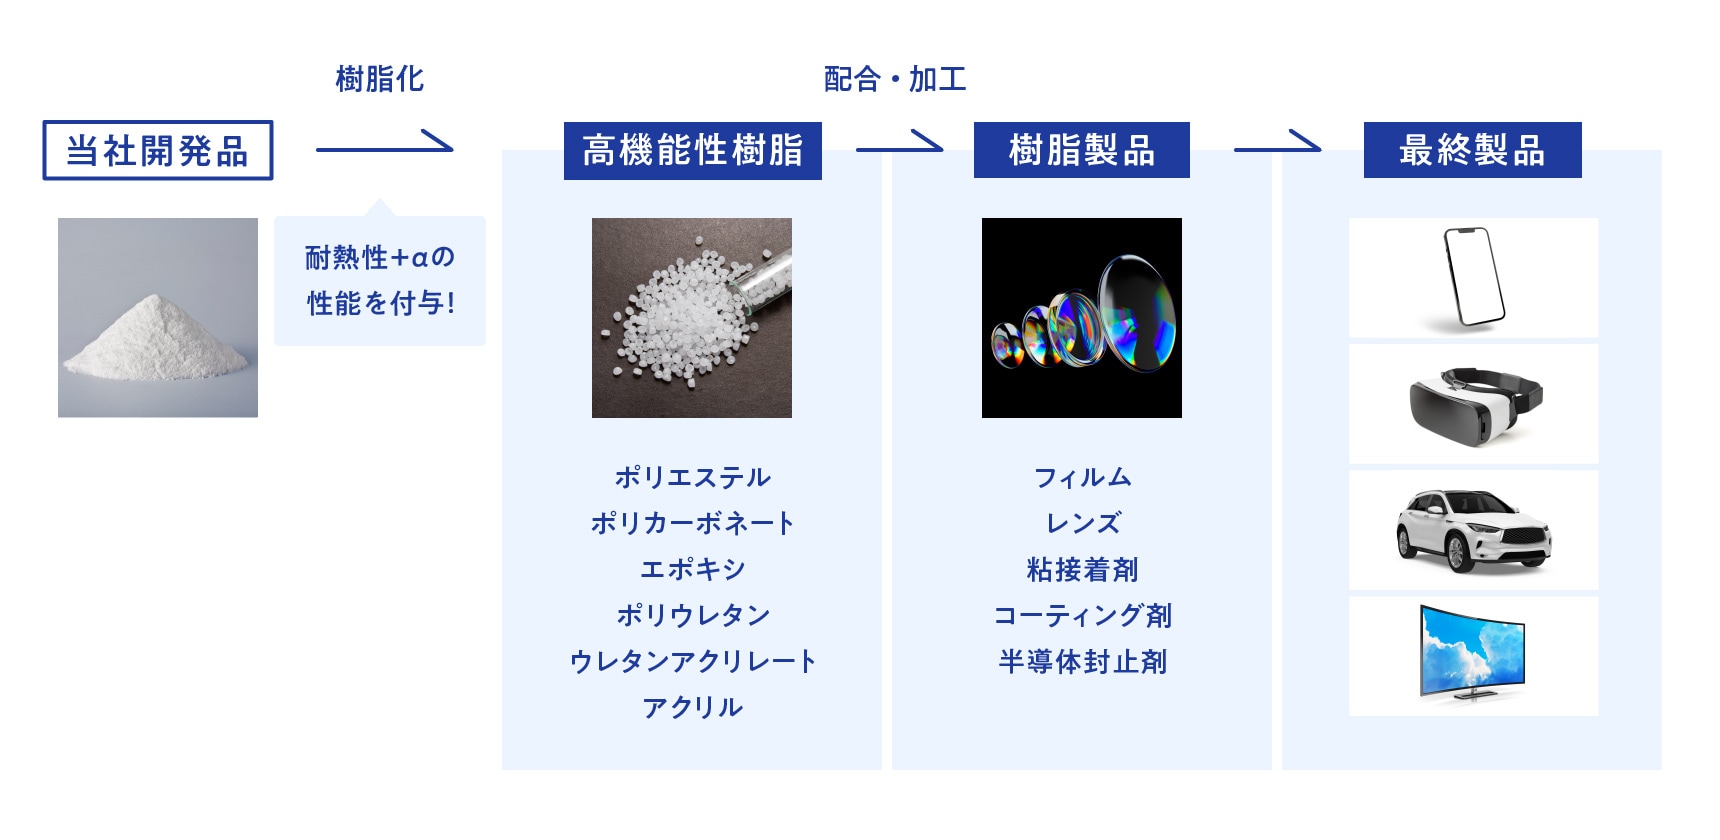 当社の開発品である脂環式化合物は、様々な分野に使用される樹脂への適用が期待される